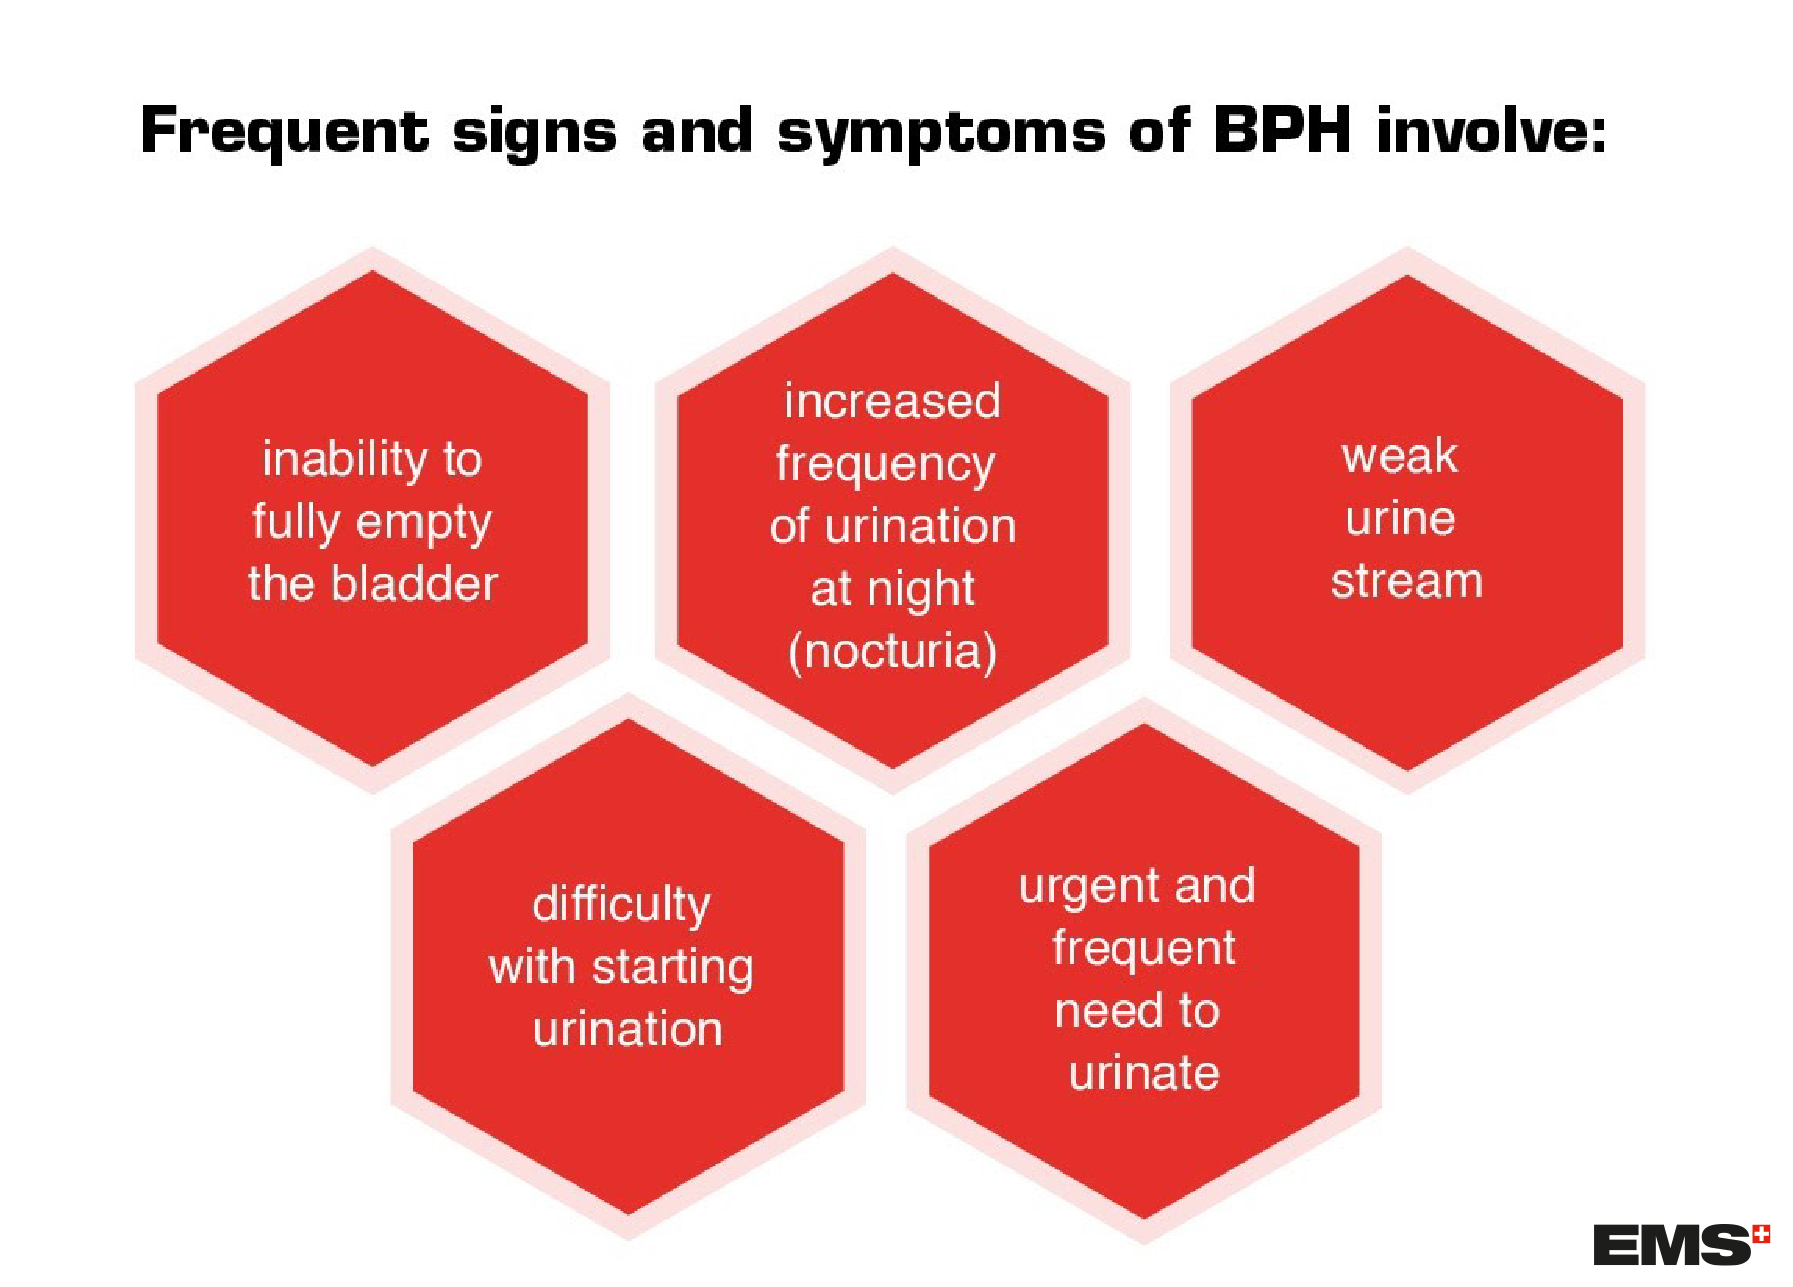 bph symptoms